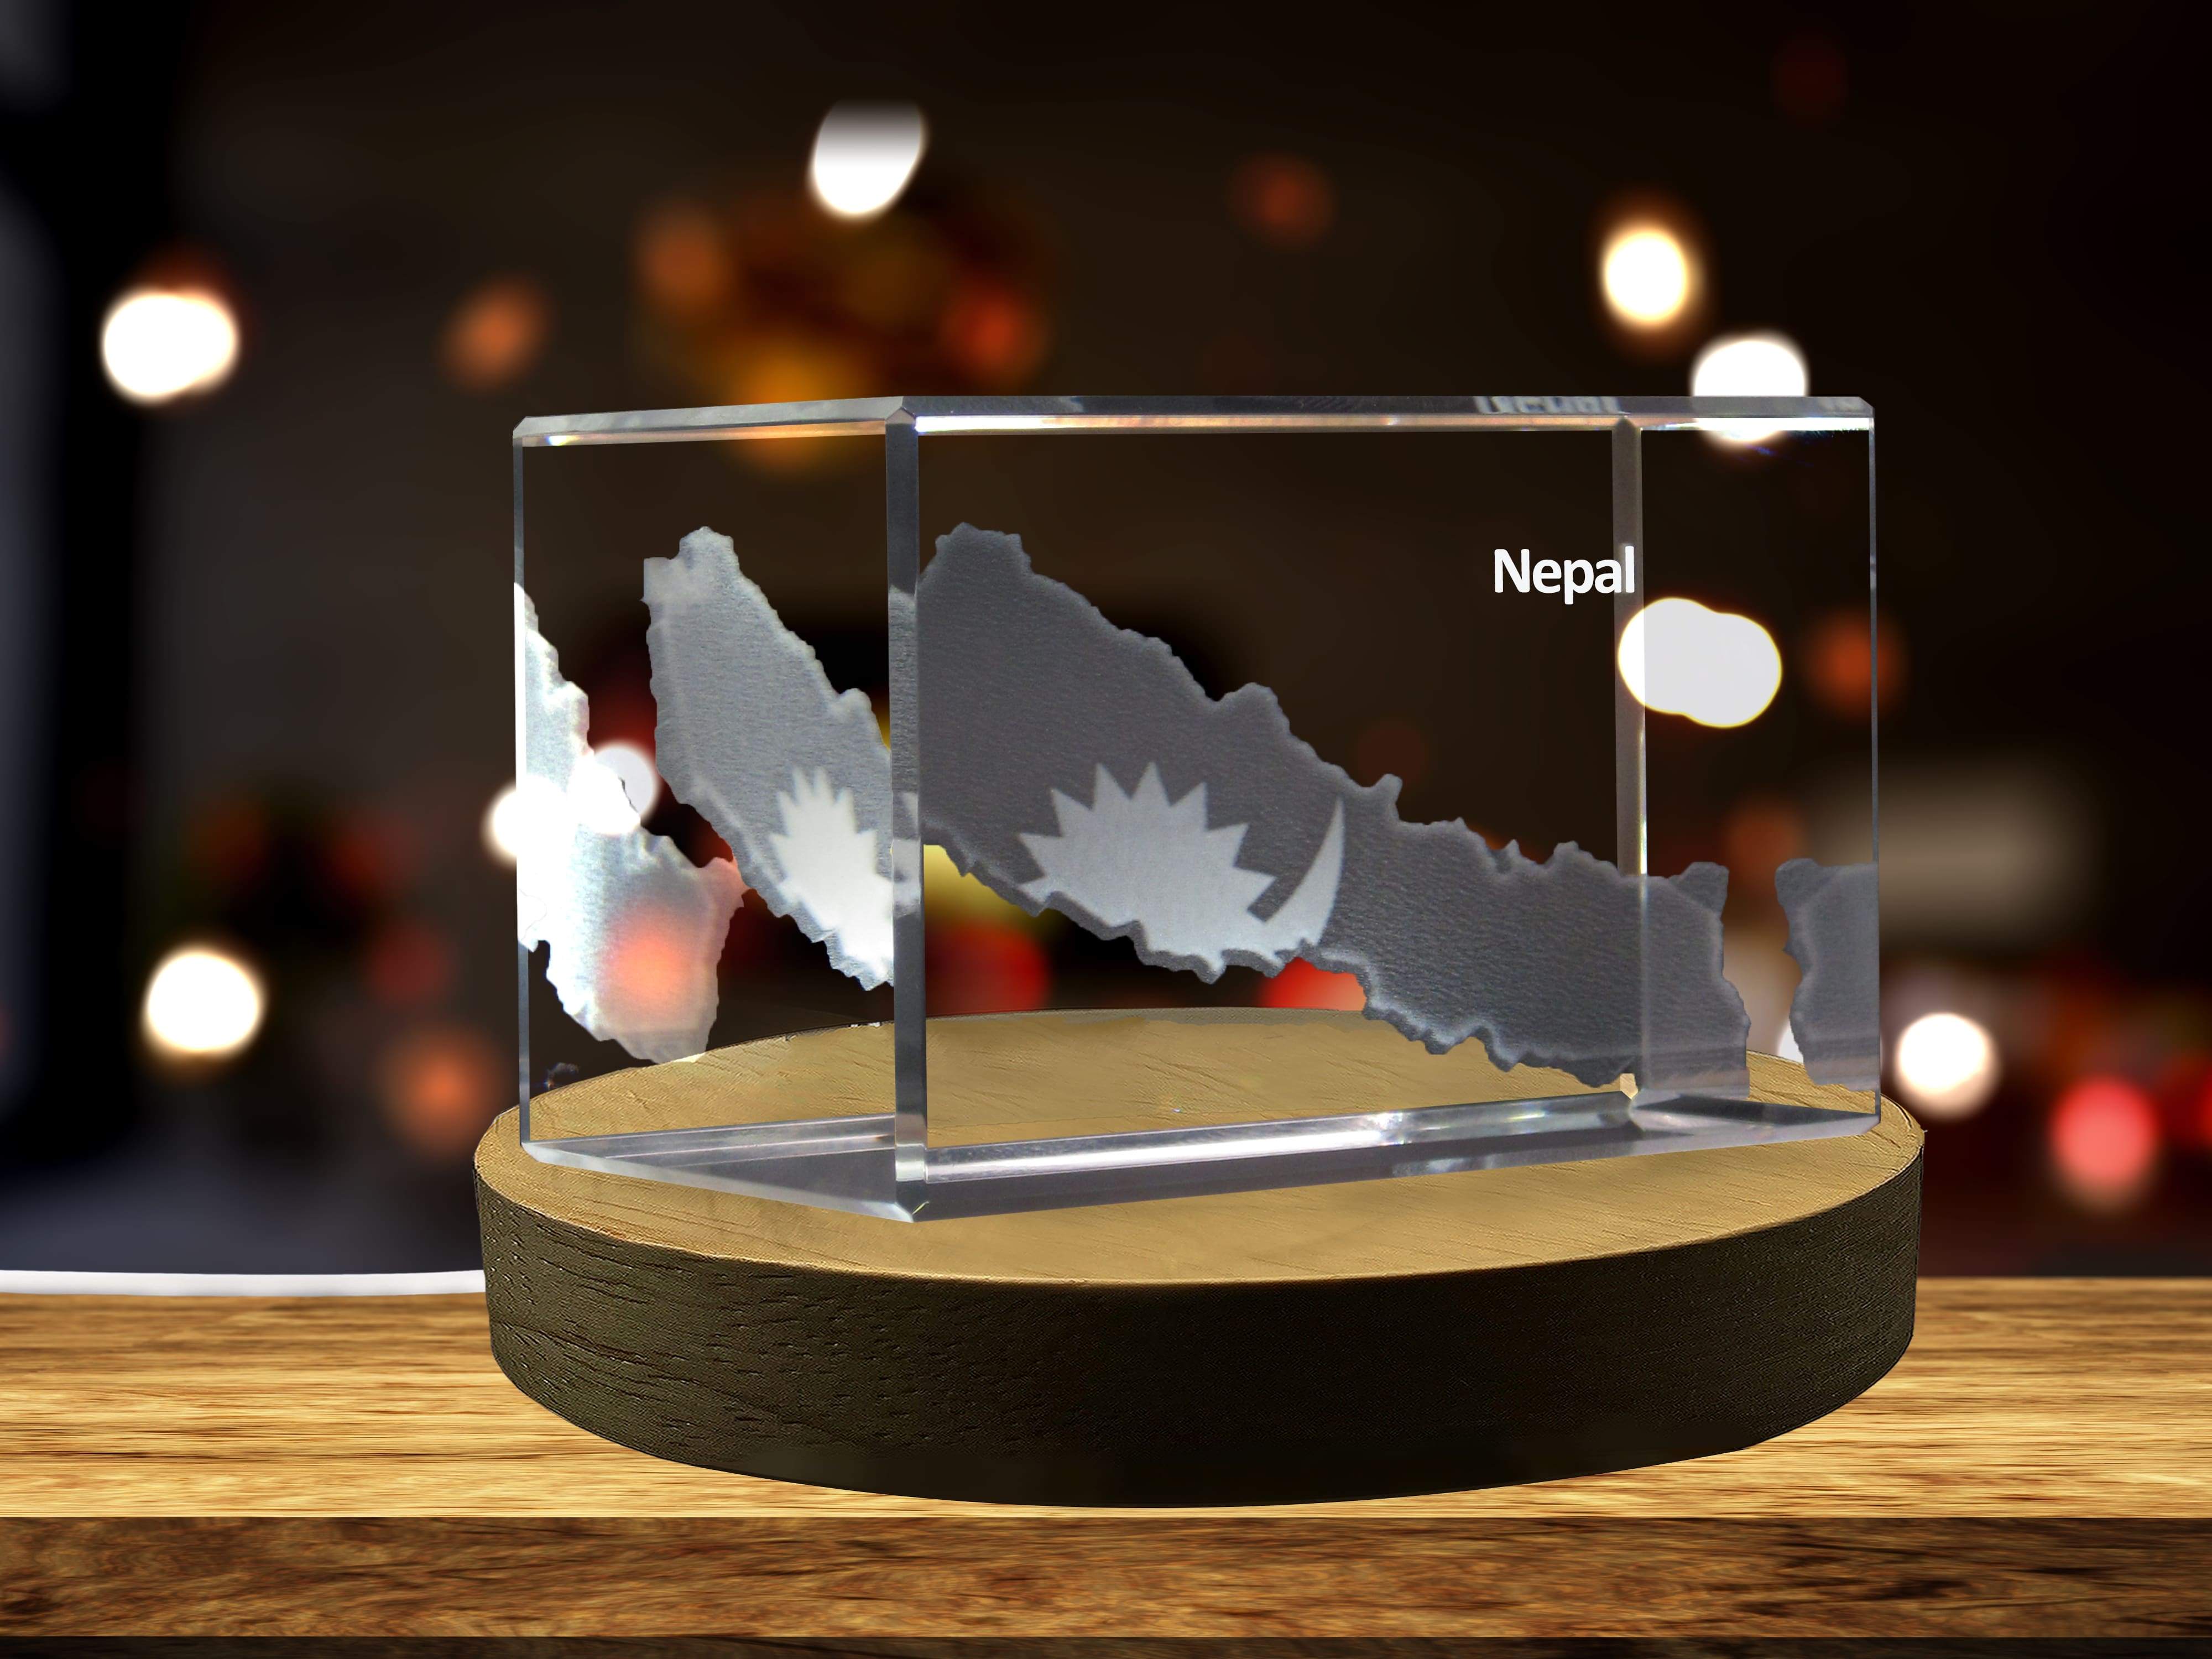 Nepal 3D Engraved Crystal 3D Engraved Crystal Keepsake/Gift/Decor/Collectible/Souvenir A&B Crystal Collection